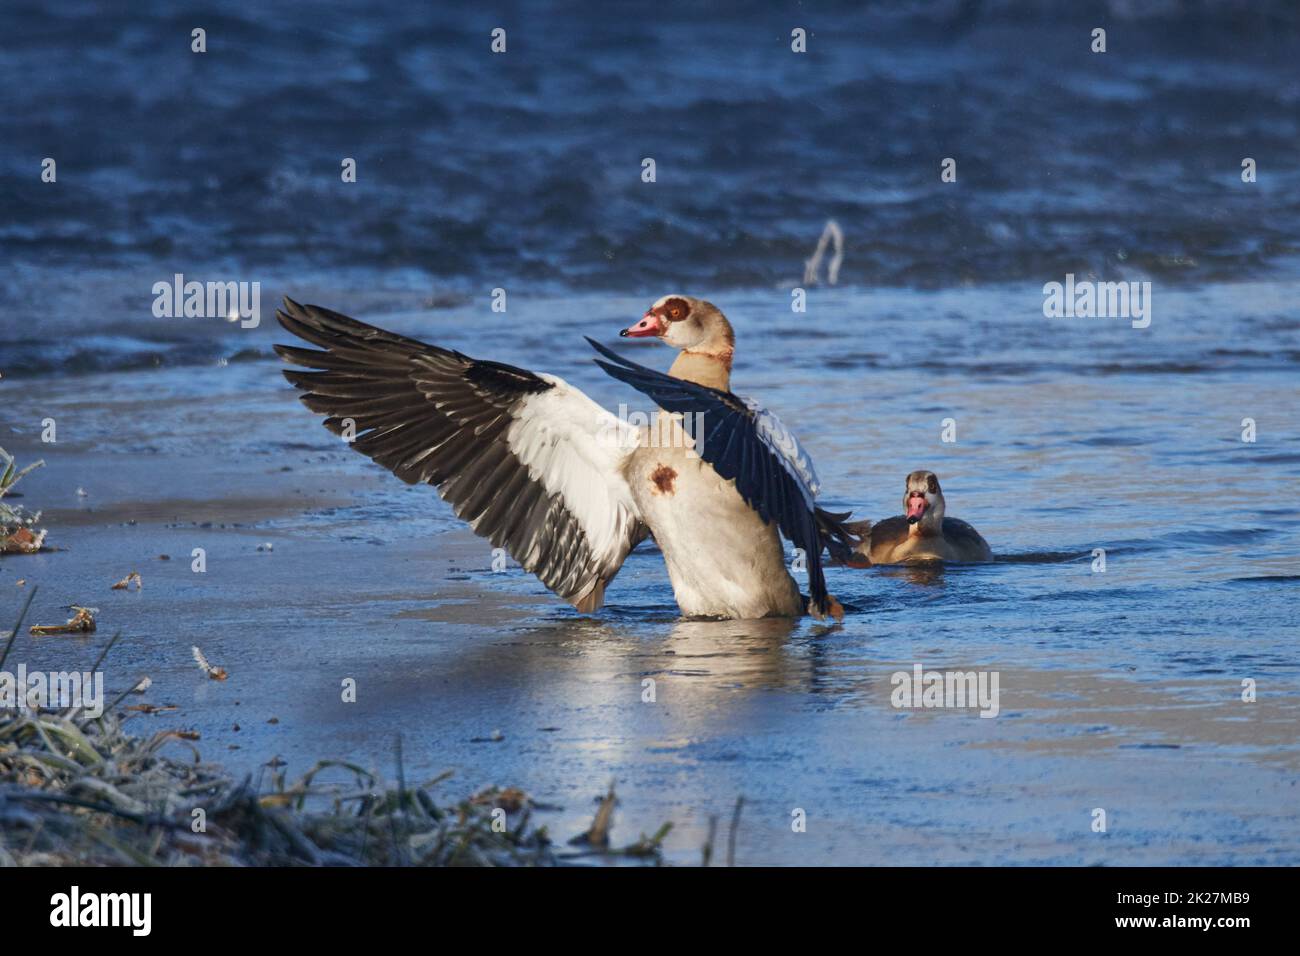 Egyptian goose (Alopochen aegyptiaca) in winter in saxon Stock Photo